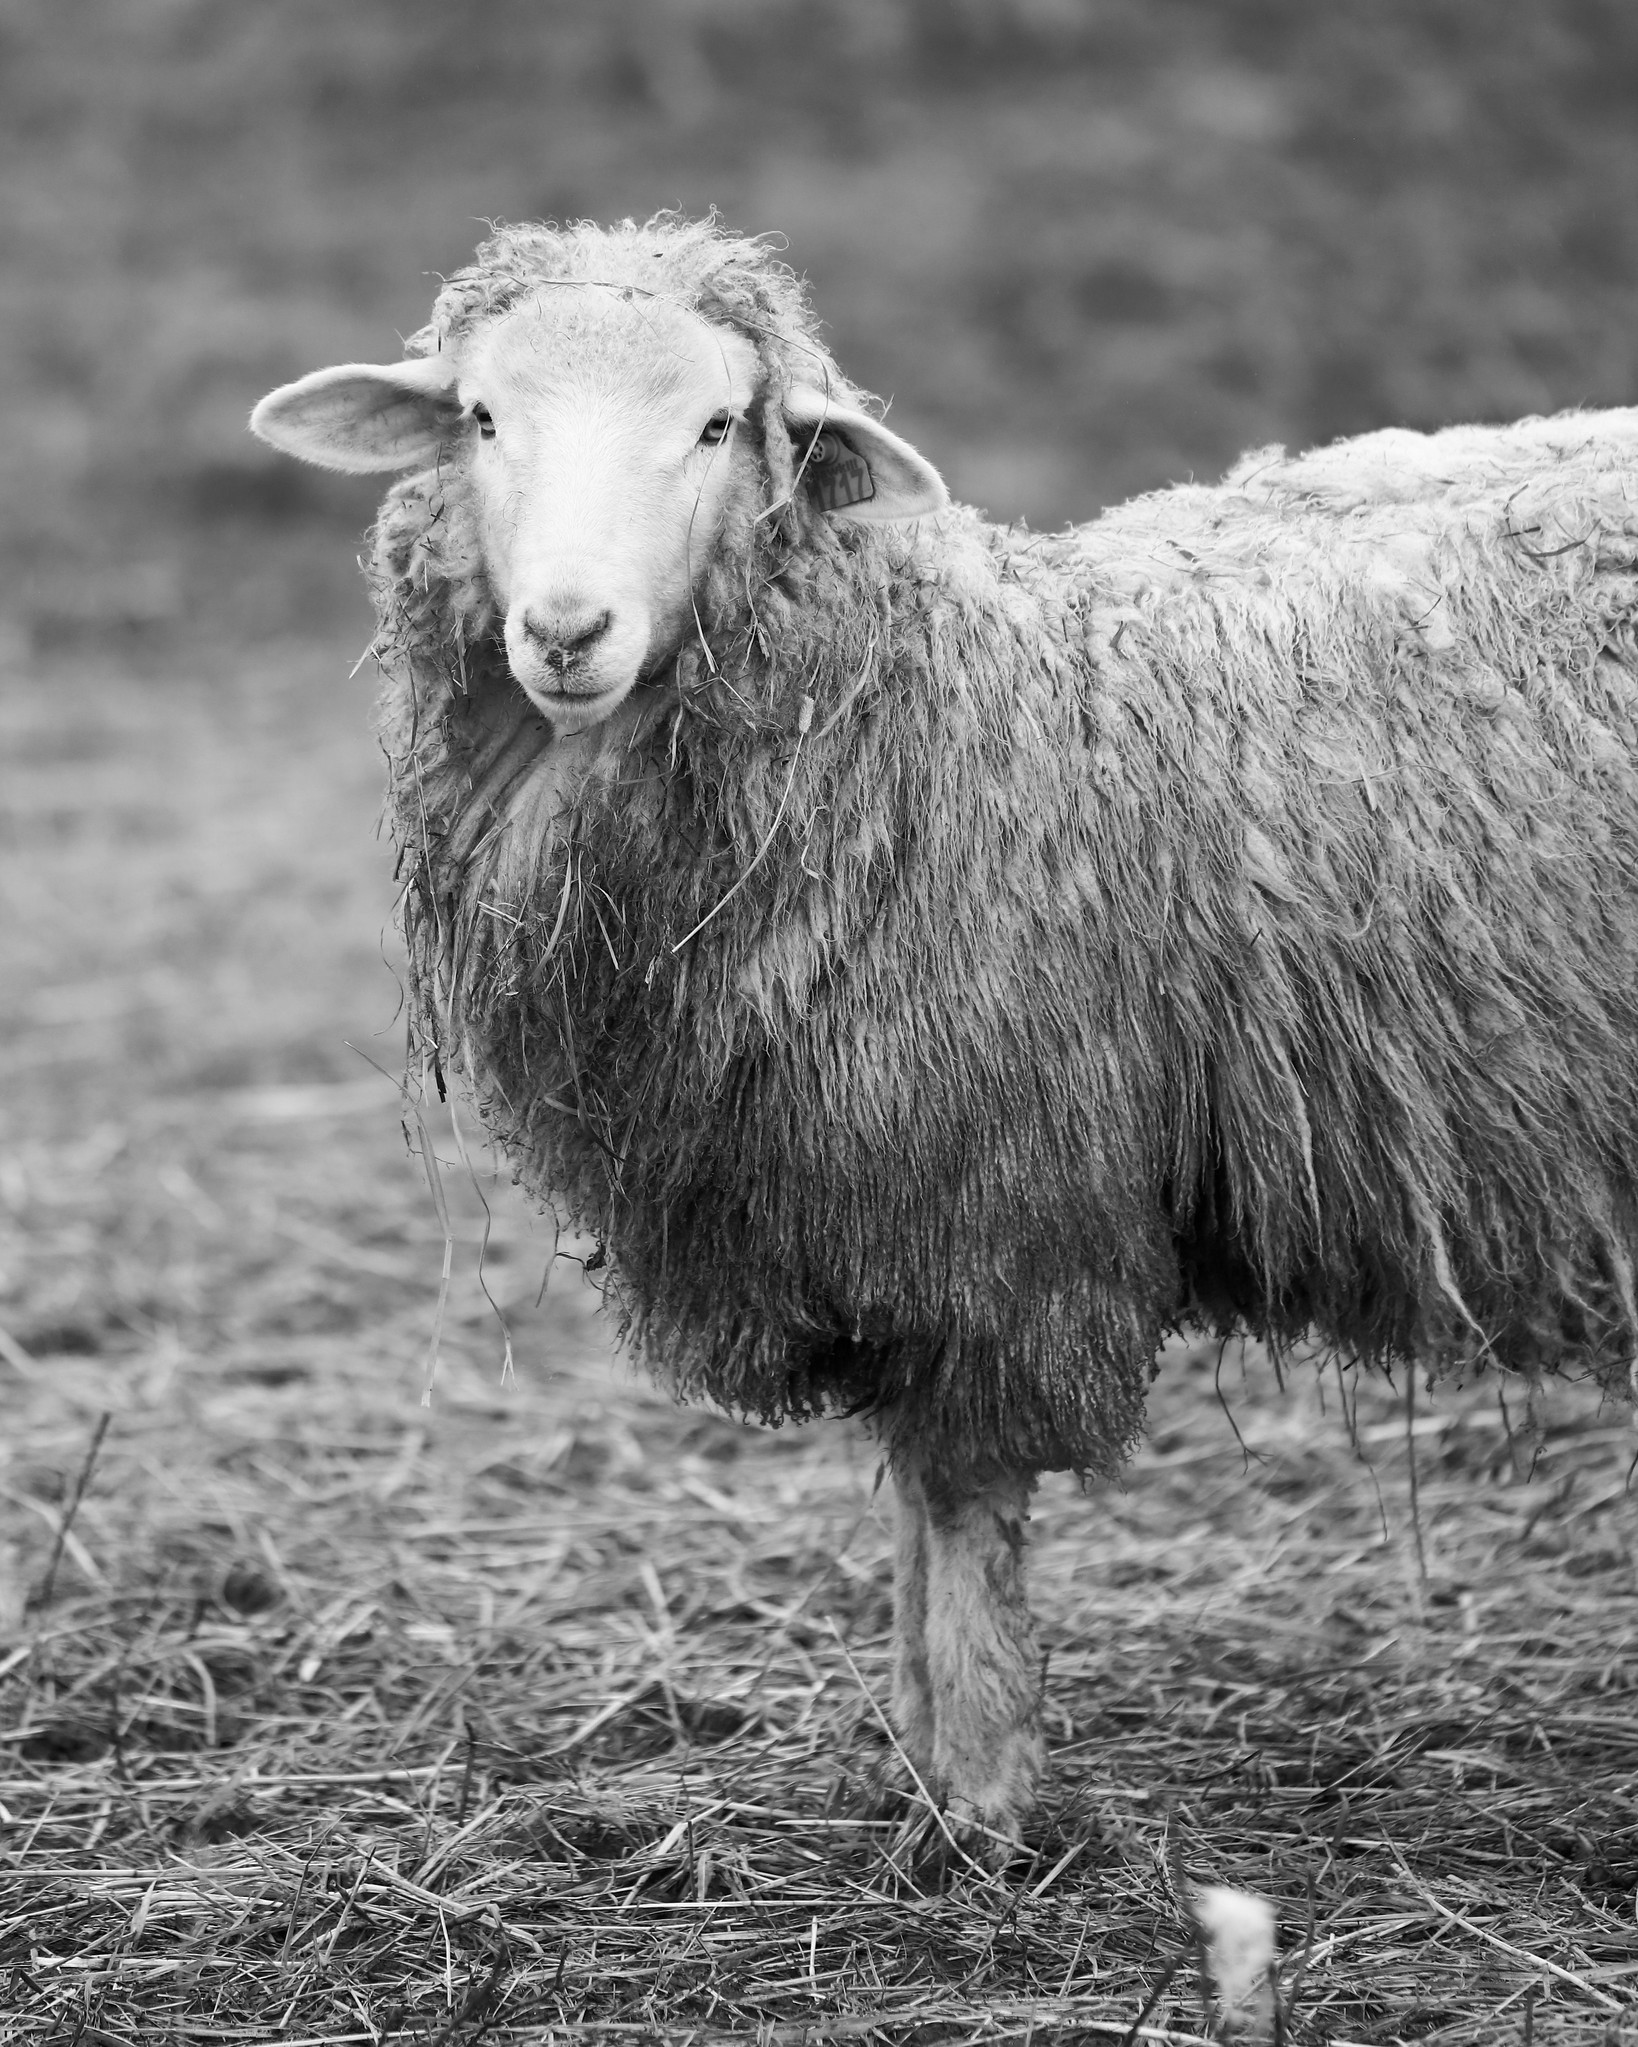 Sawkill Farm Sheep